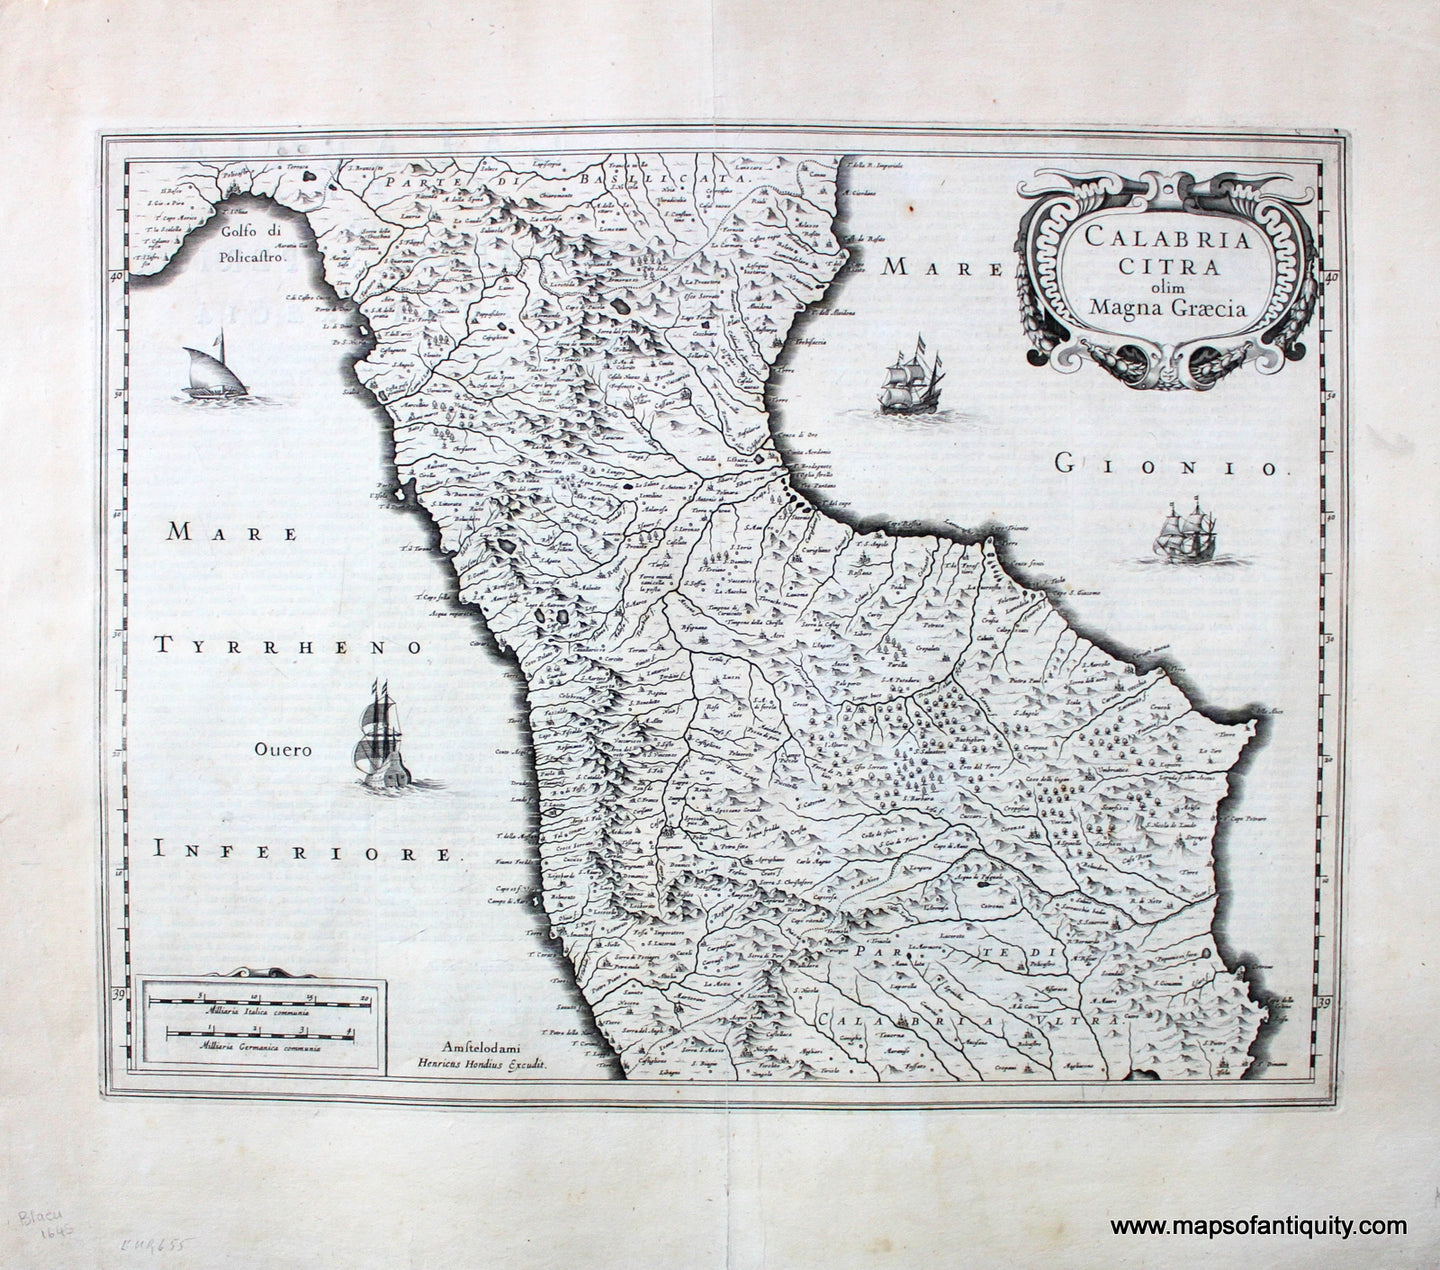 Antique-Engraved-Black-and-White-Map-Calabria-Citra-olim-Magna-Graecia---1645-Blaeu-Maps-Of-Antiquity